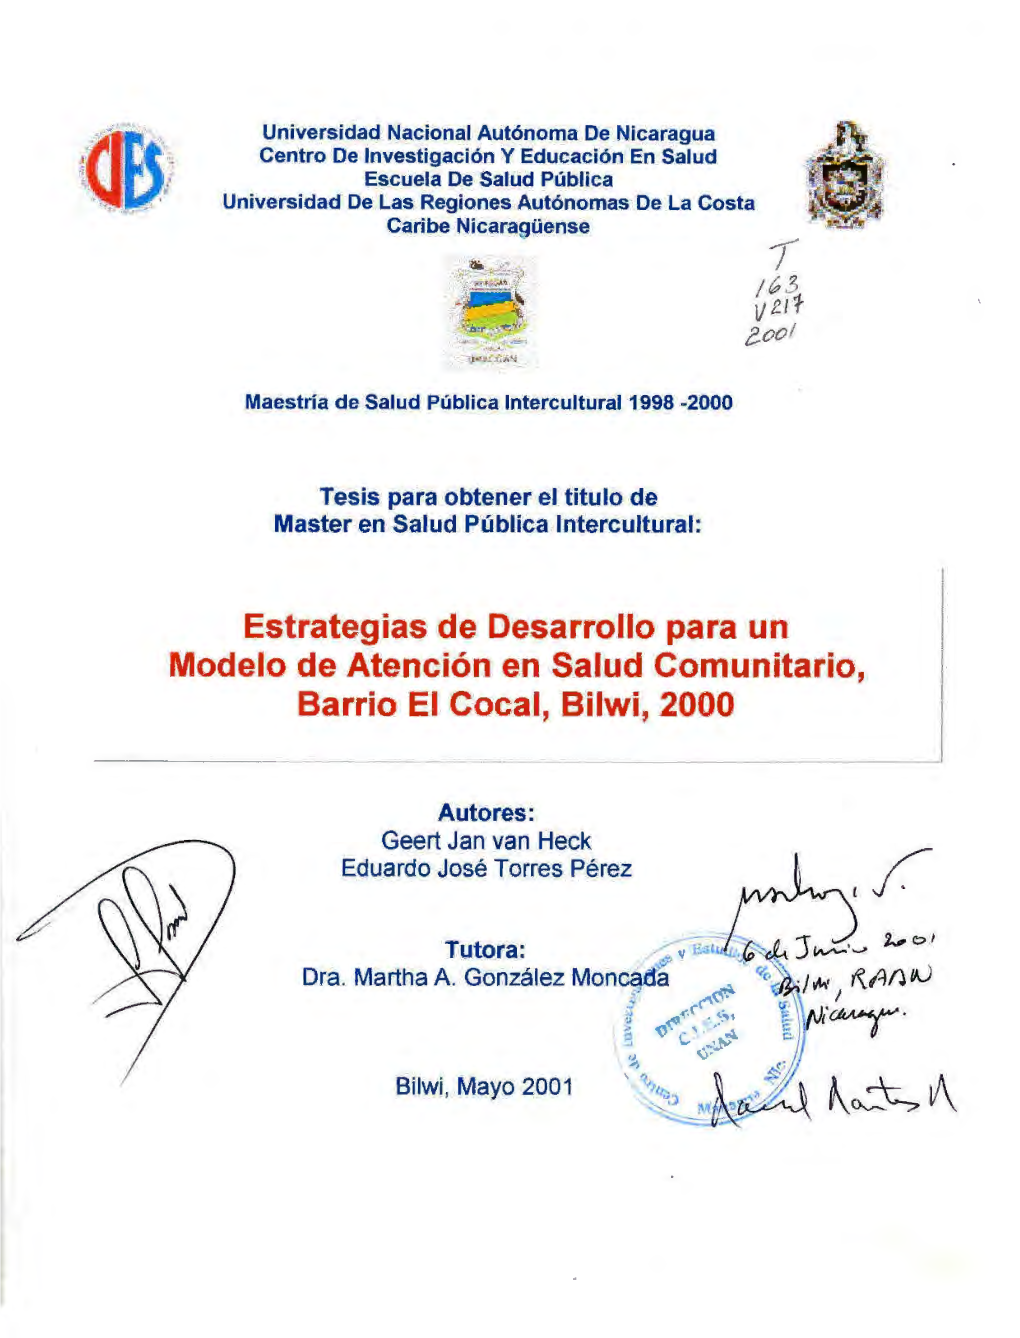 Estrategias De Desarrollo Para Un Modelo De Atención En Salud Comunitario, Barrio El Cocal, Bilwi, 2000